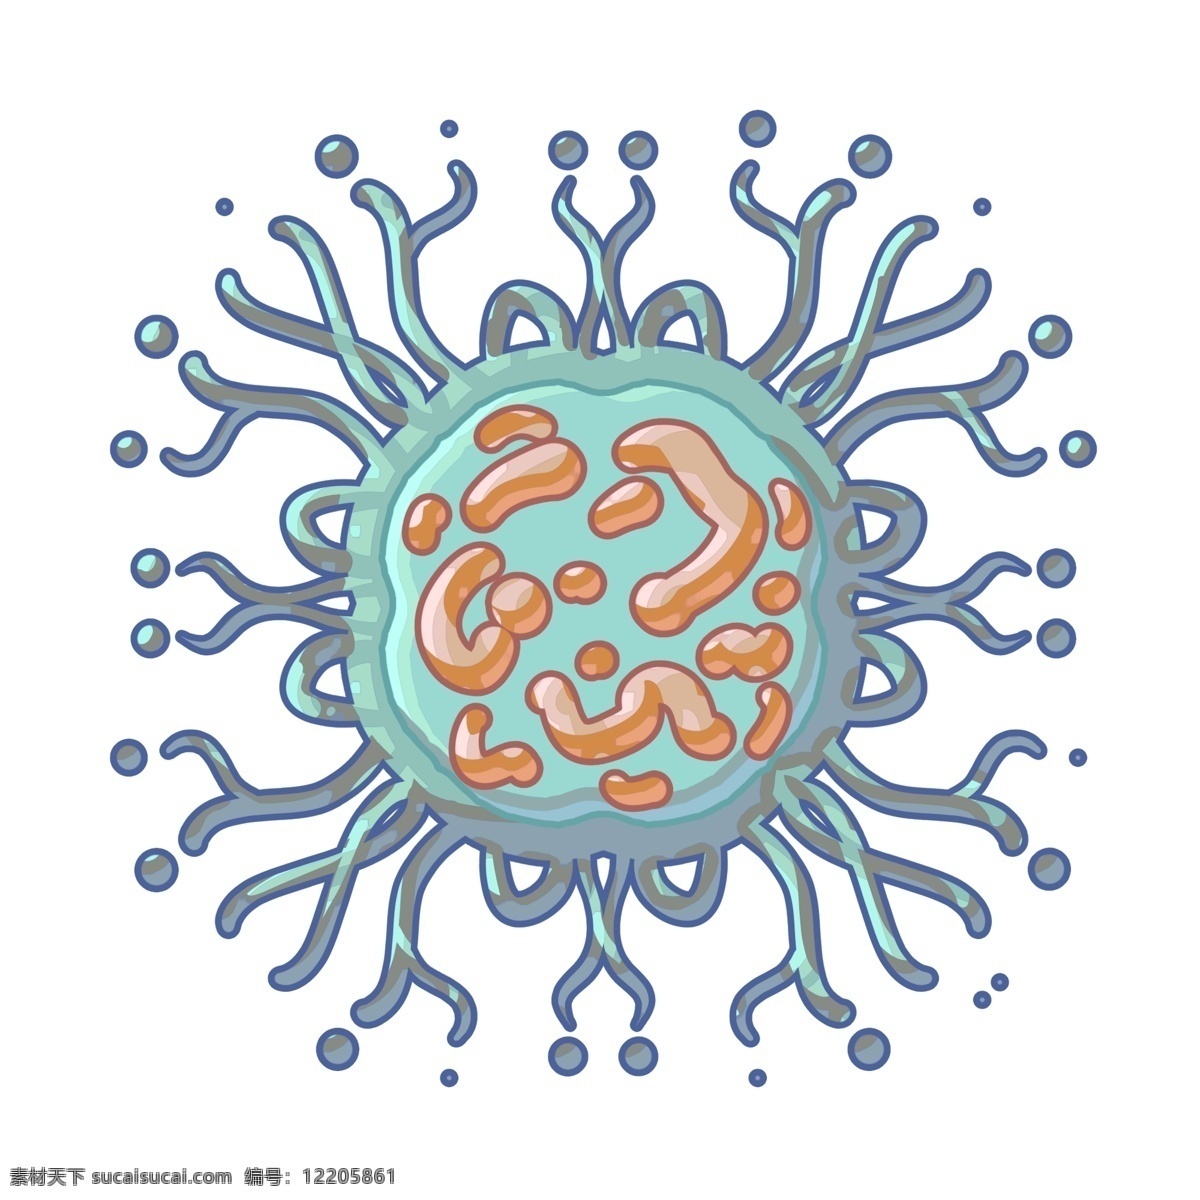 蓝色 网状 细菌 插画 毛球细菌 蓝色细菌 蓝色的触须 生物细菌插画 病毒插画 卡通病毒 创意病毒插画